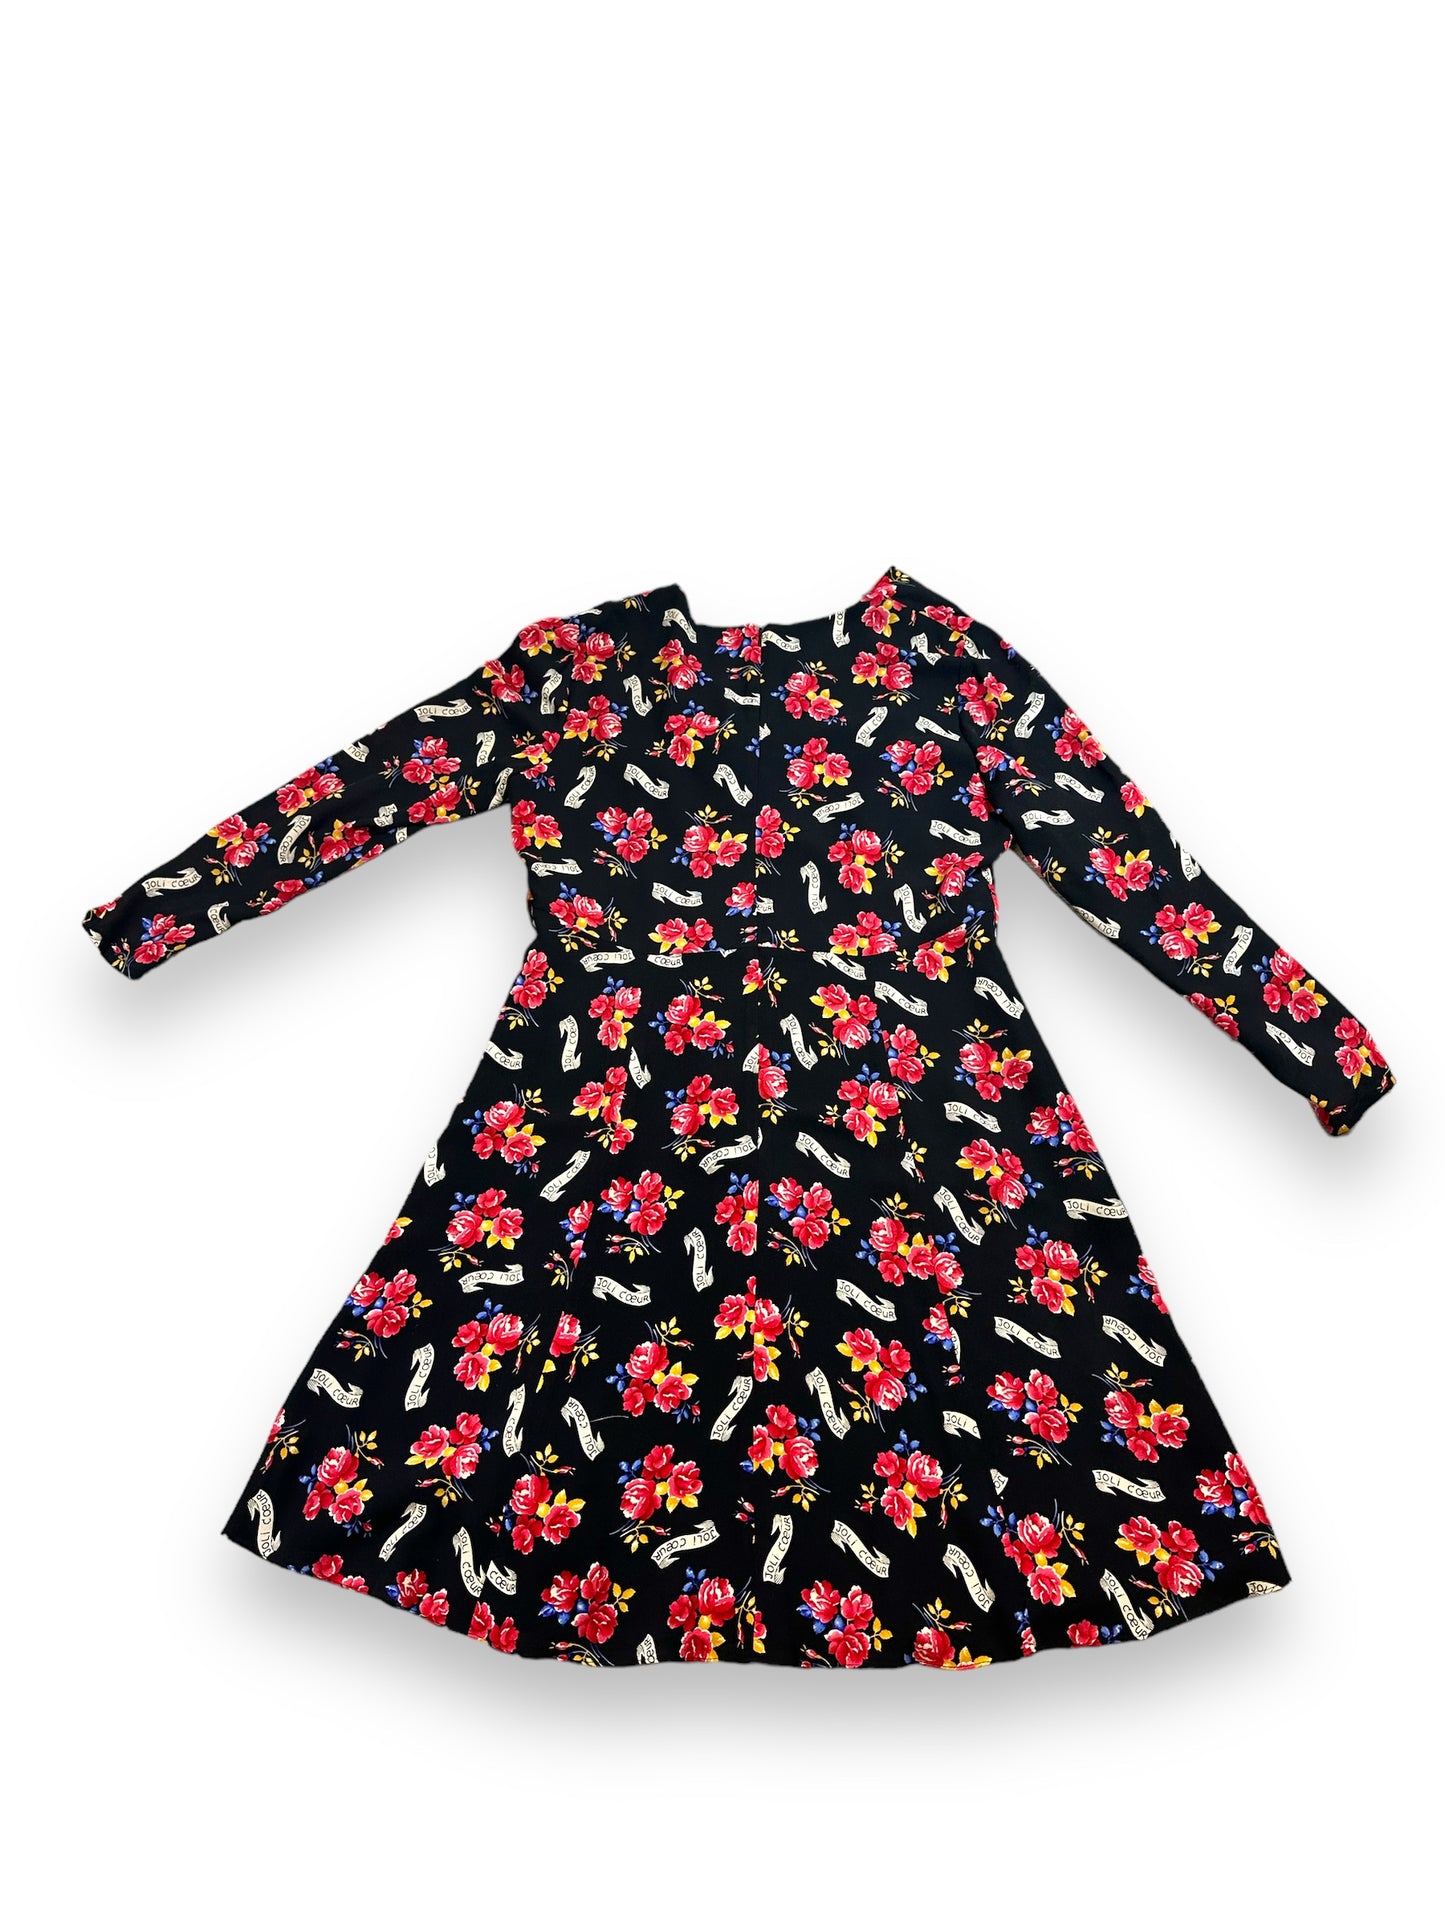 1990s Dana Bachman “Joi Coeur” Floral Print Tie Dress